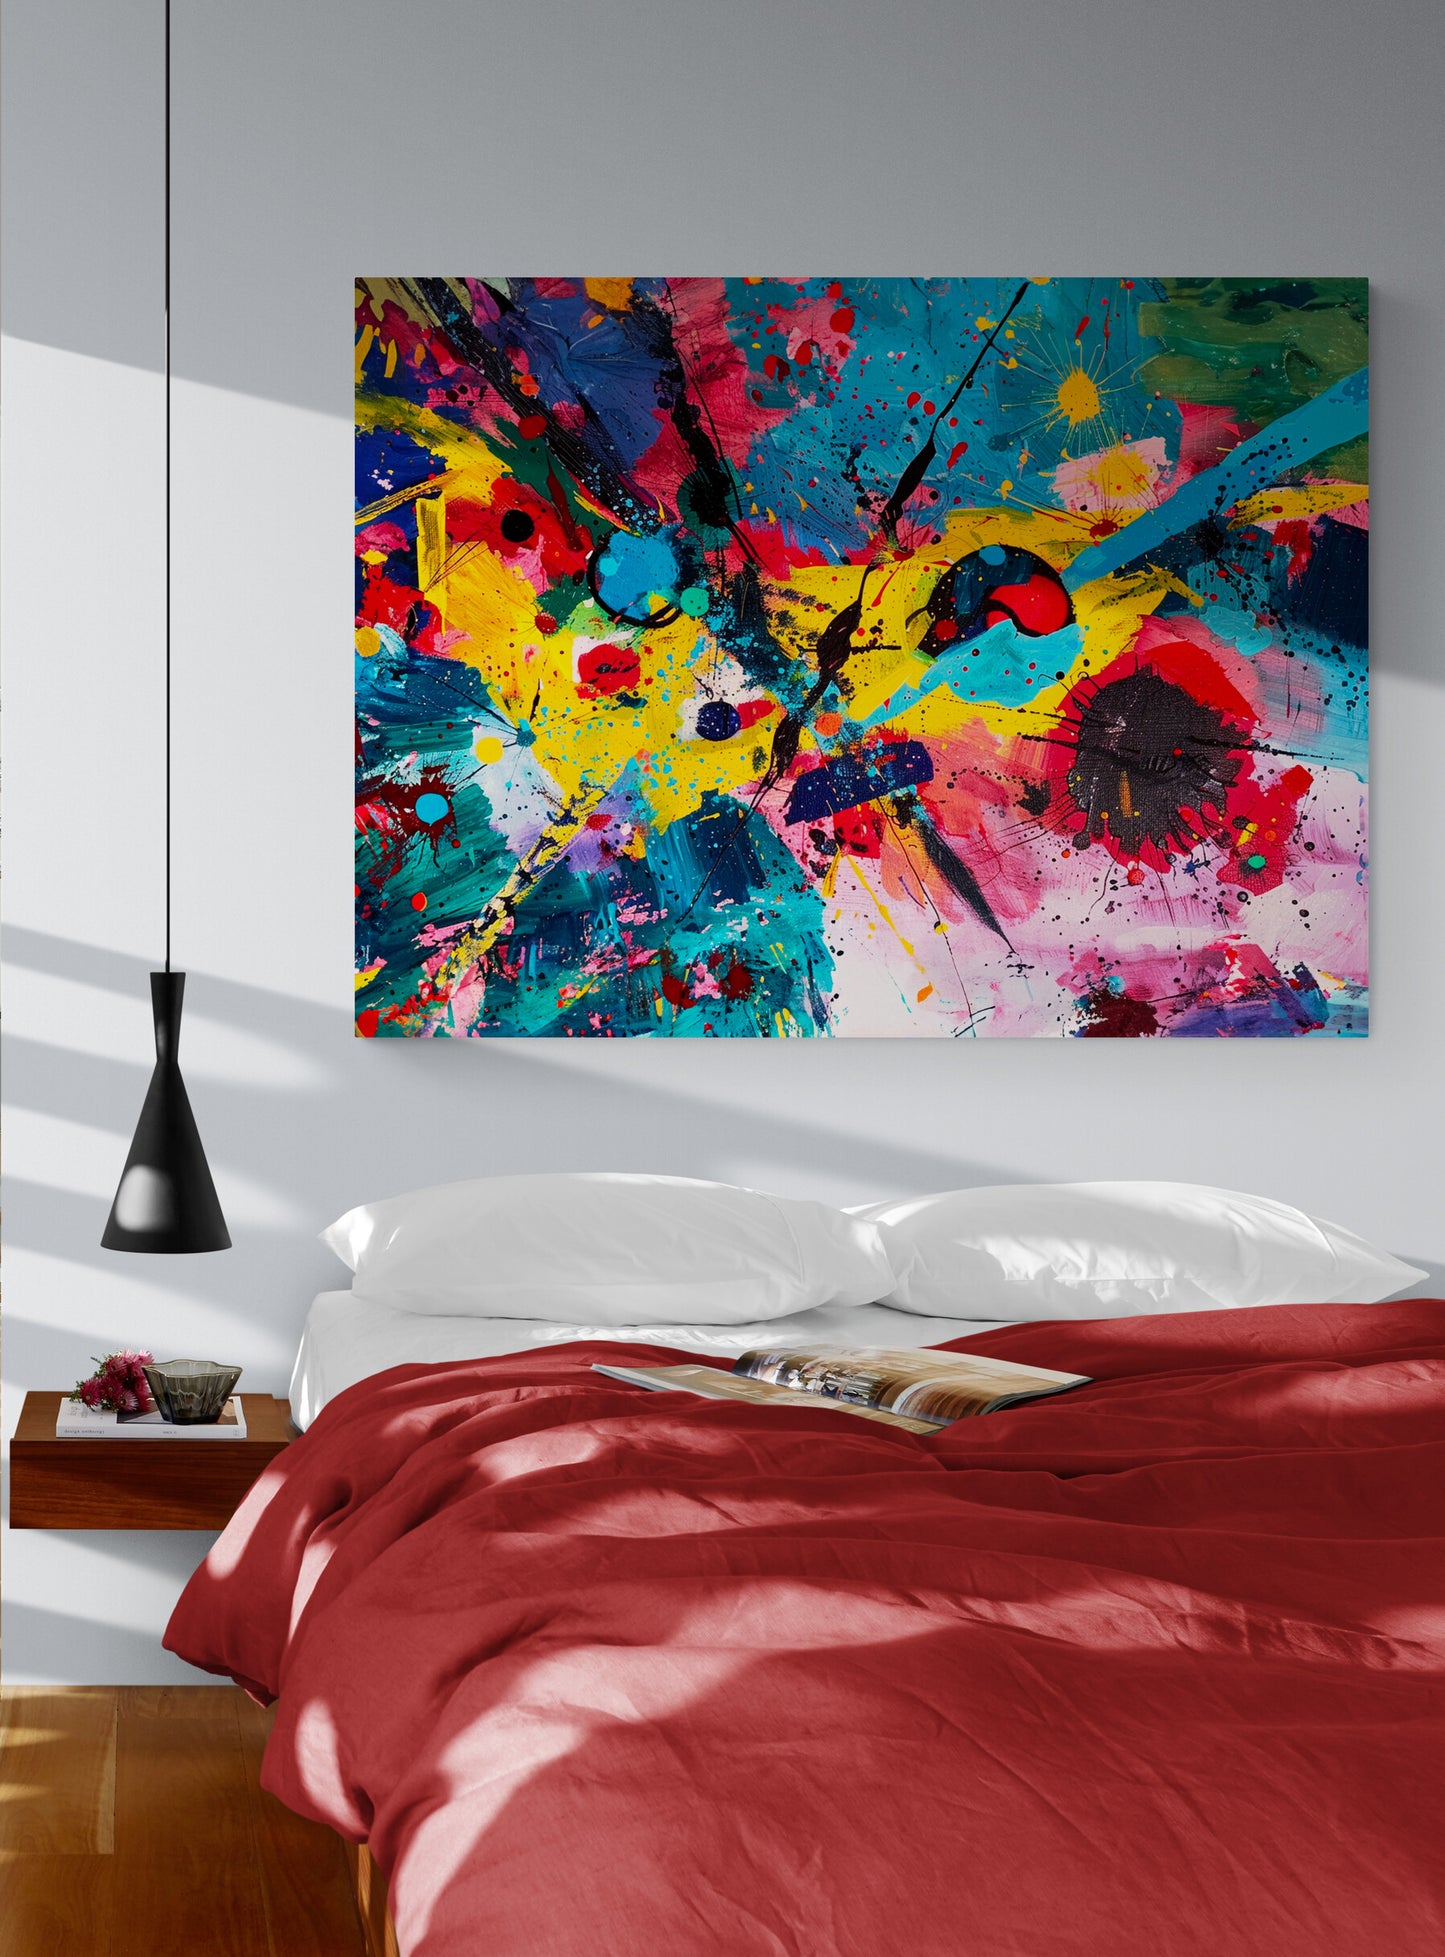 chambre pour adulte, draps rouge, table de nuit murale, éclairage suspension, mur blanc, salle lumineuse, affiche d'art.